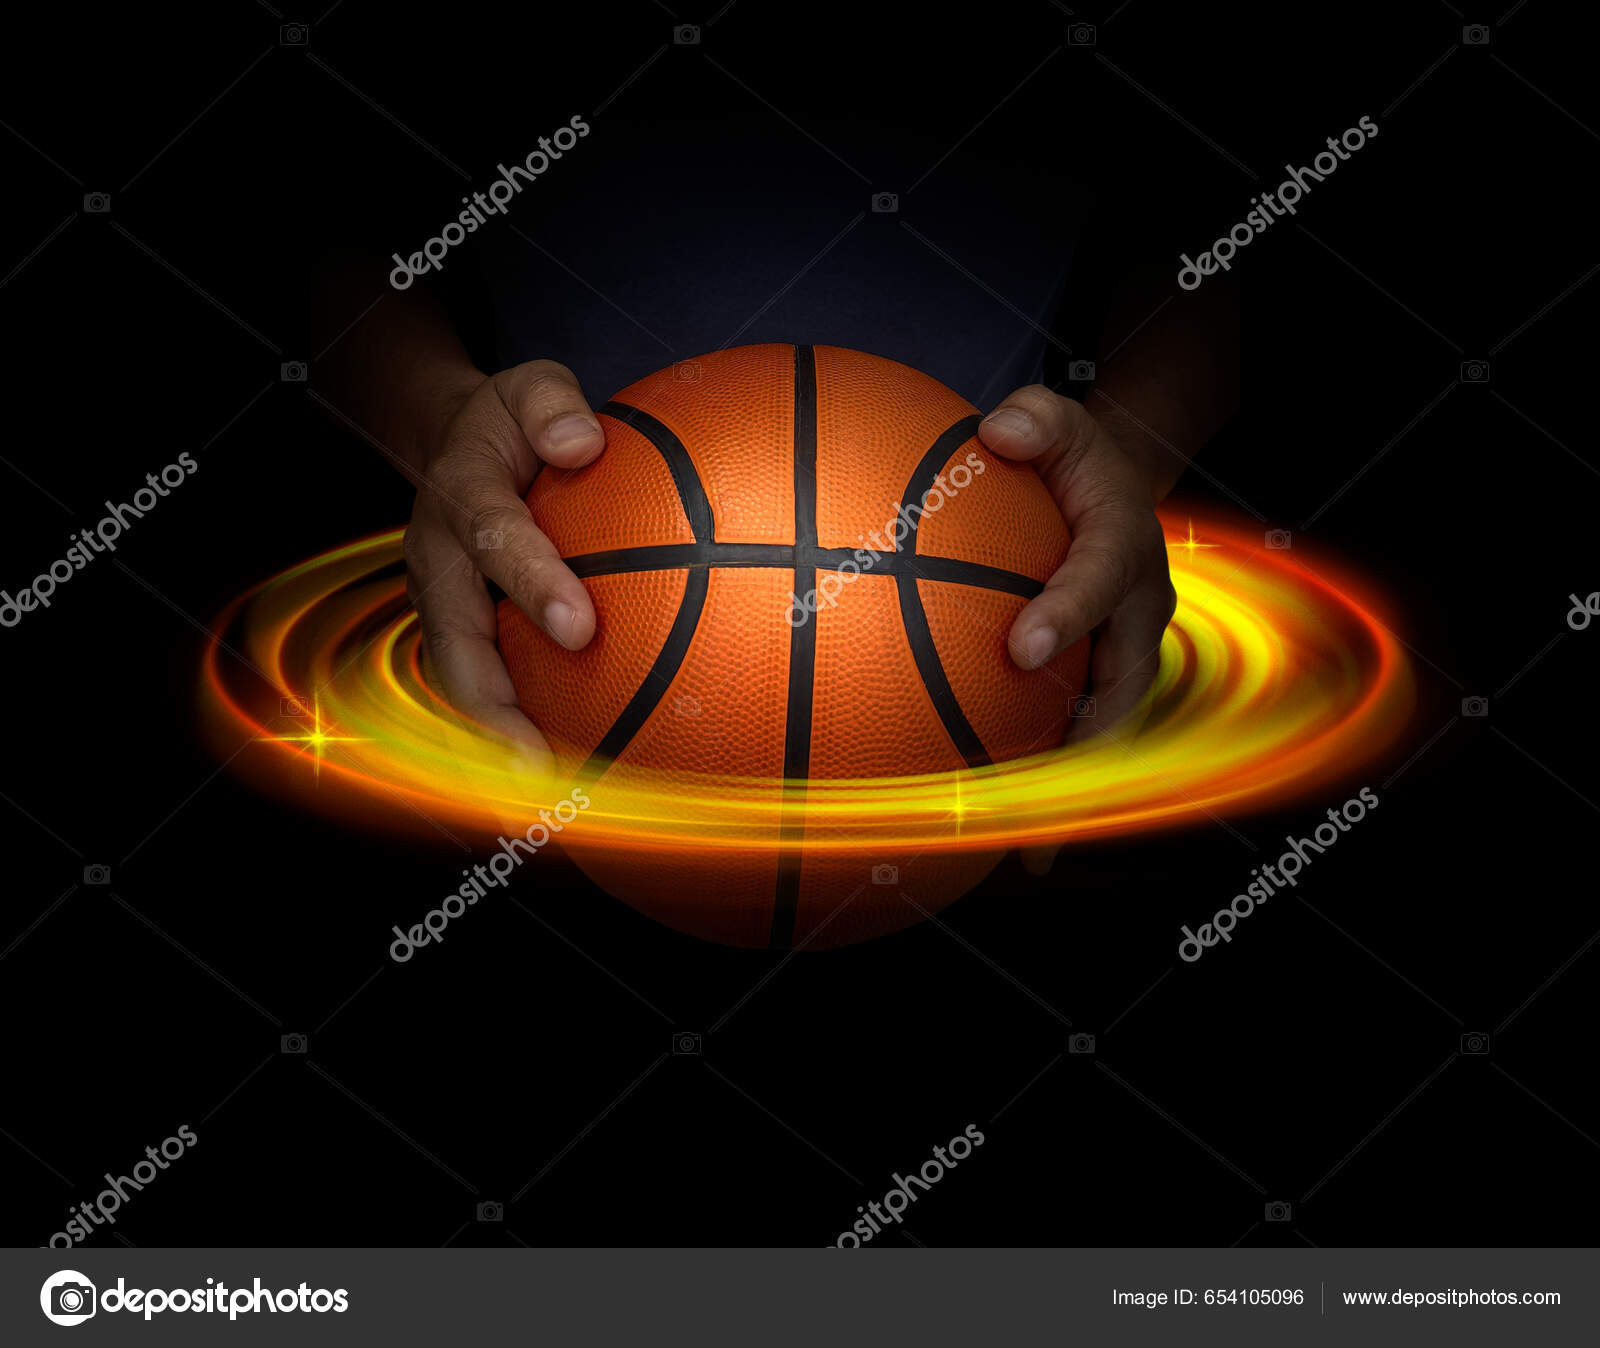 Bola de basquete — Ilustração de Stock